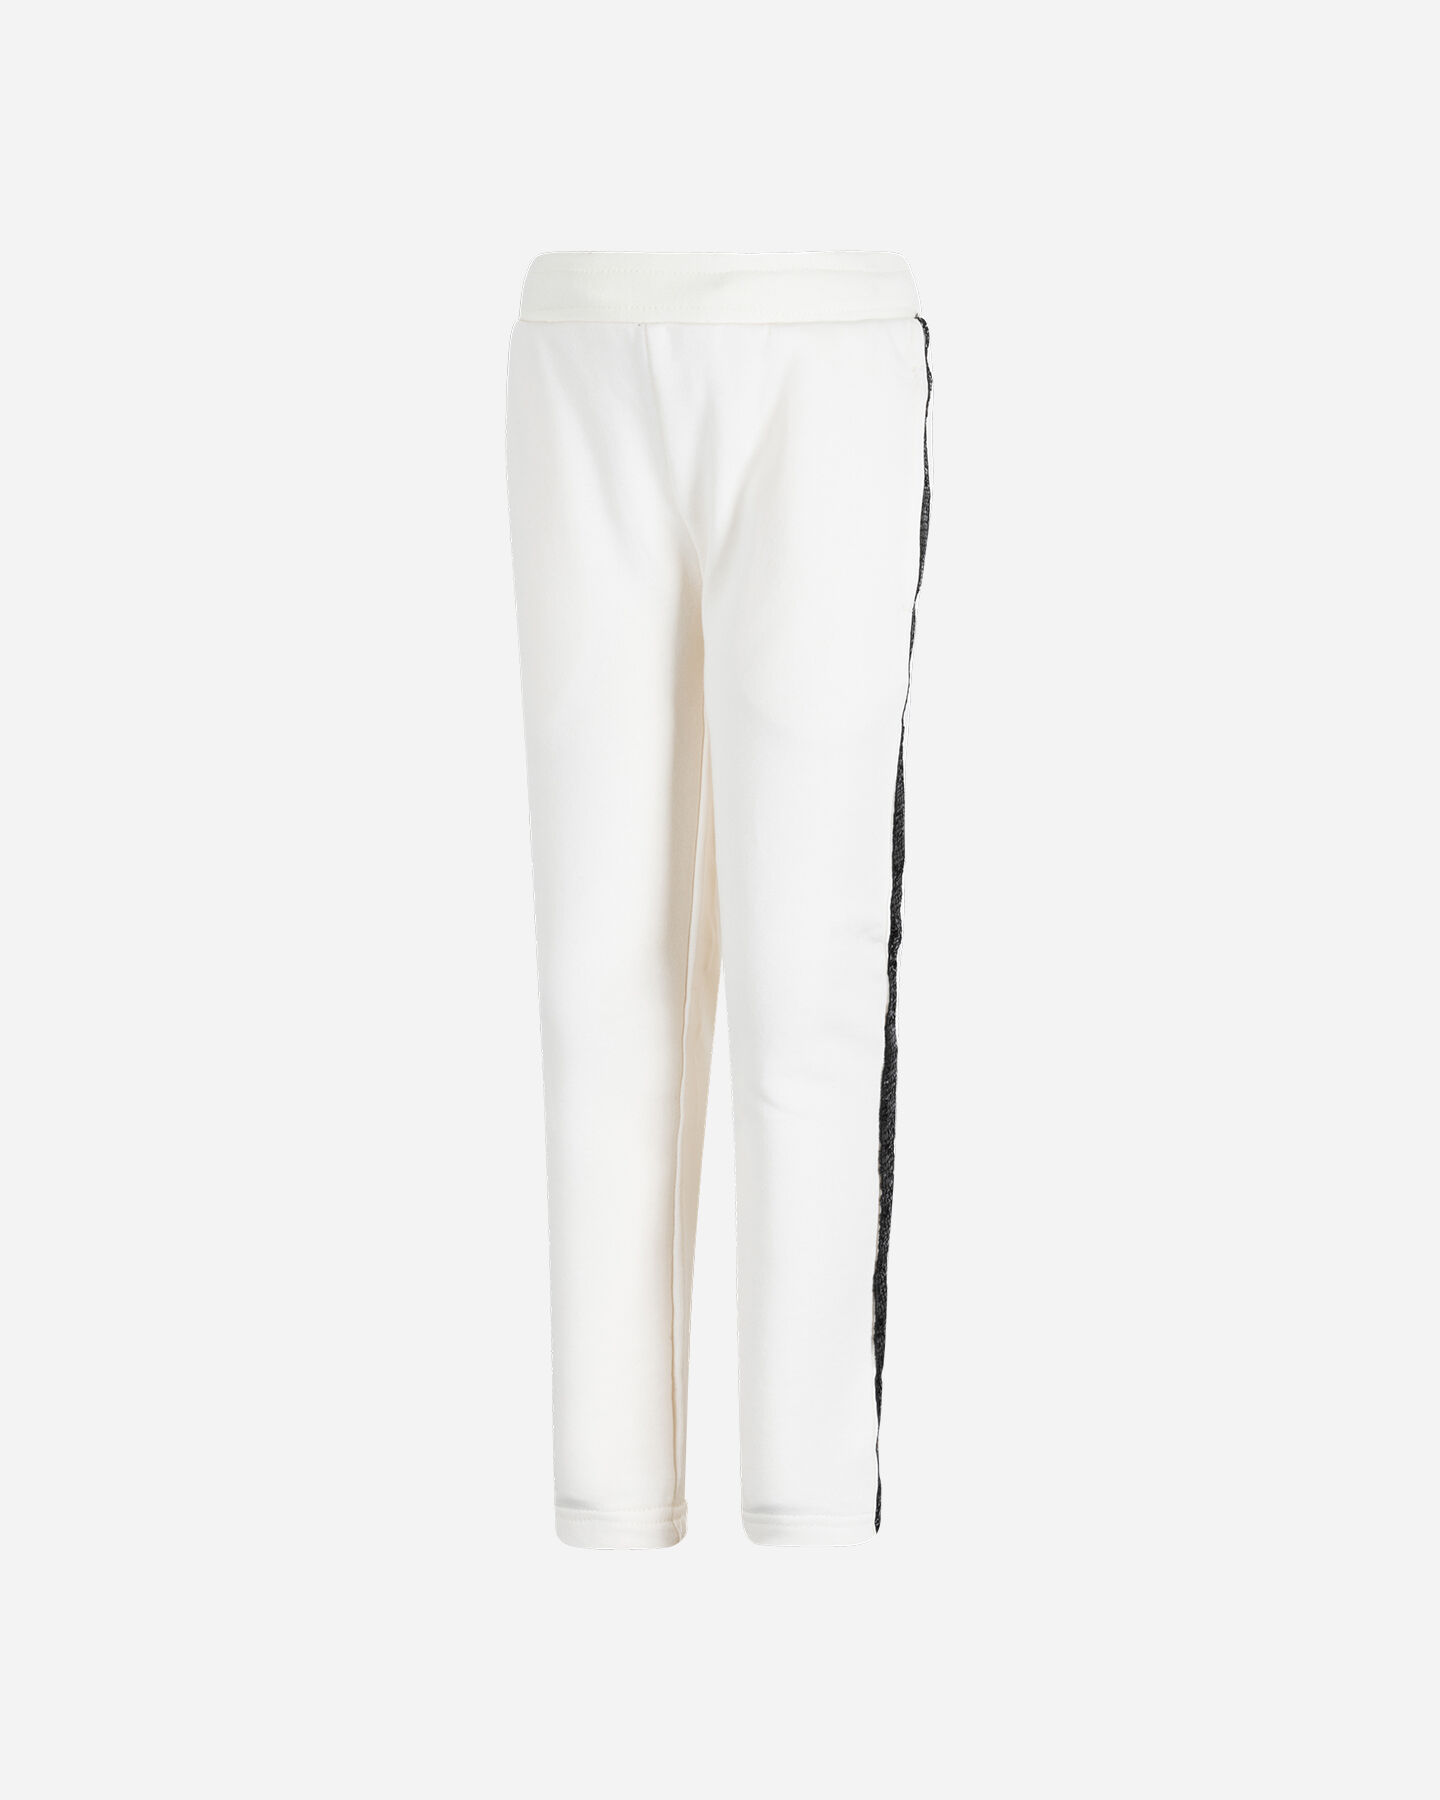  Pantalone ADMIRAL GRAPHIC LOGO JR S4106619|002|14A scatto 0